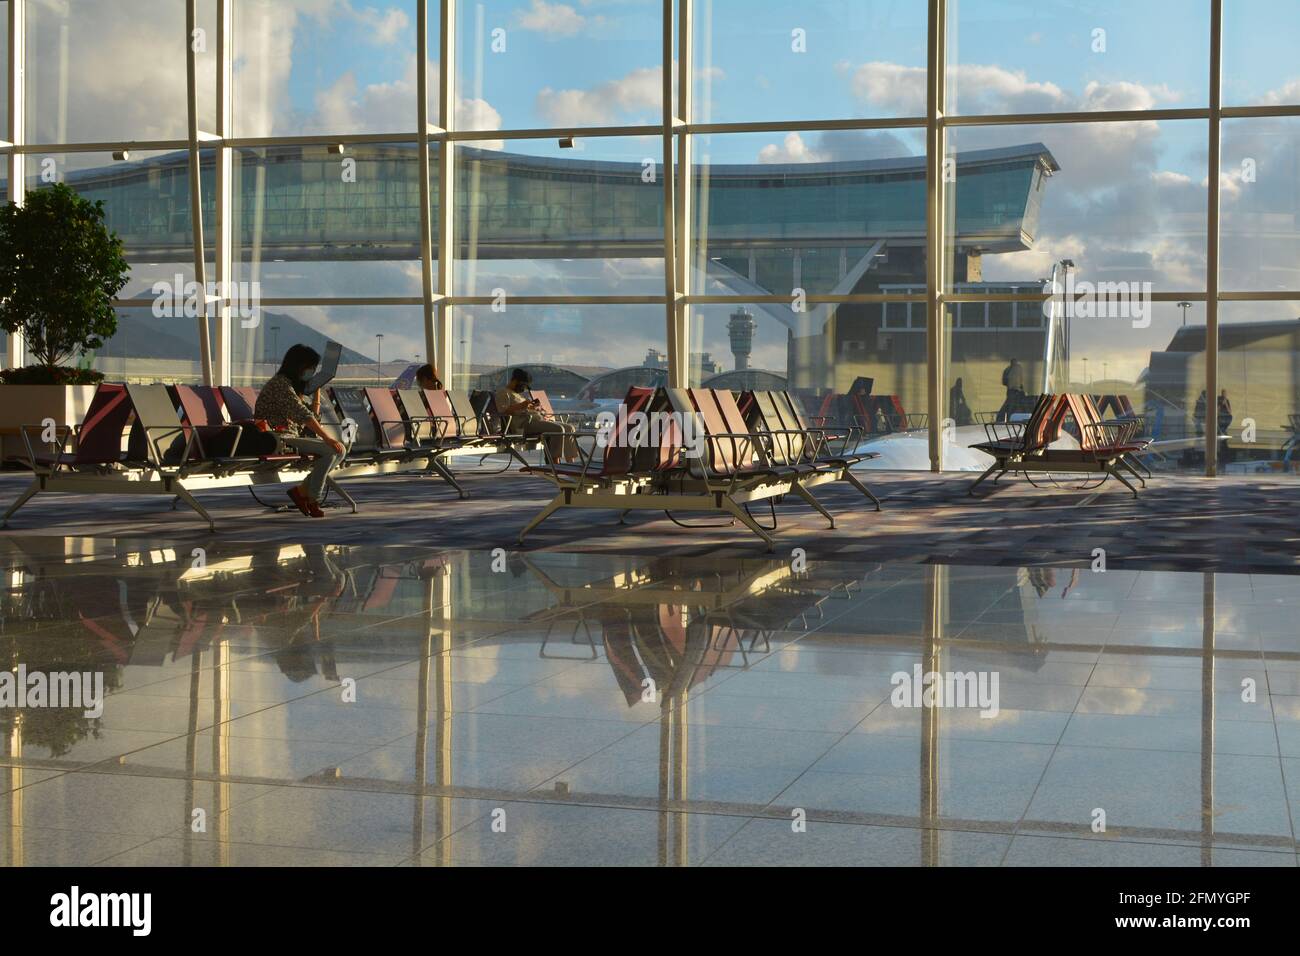 Quelques passagers attendent leur vol devant une immense fenêtre offrant une vue sur Chek Lap Kok, l'aéroport international de Hong Kong. Banque D'Images